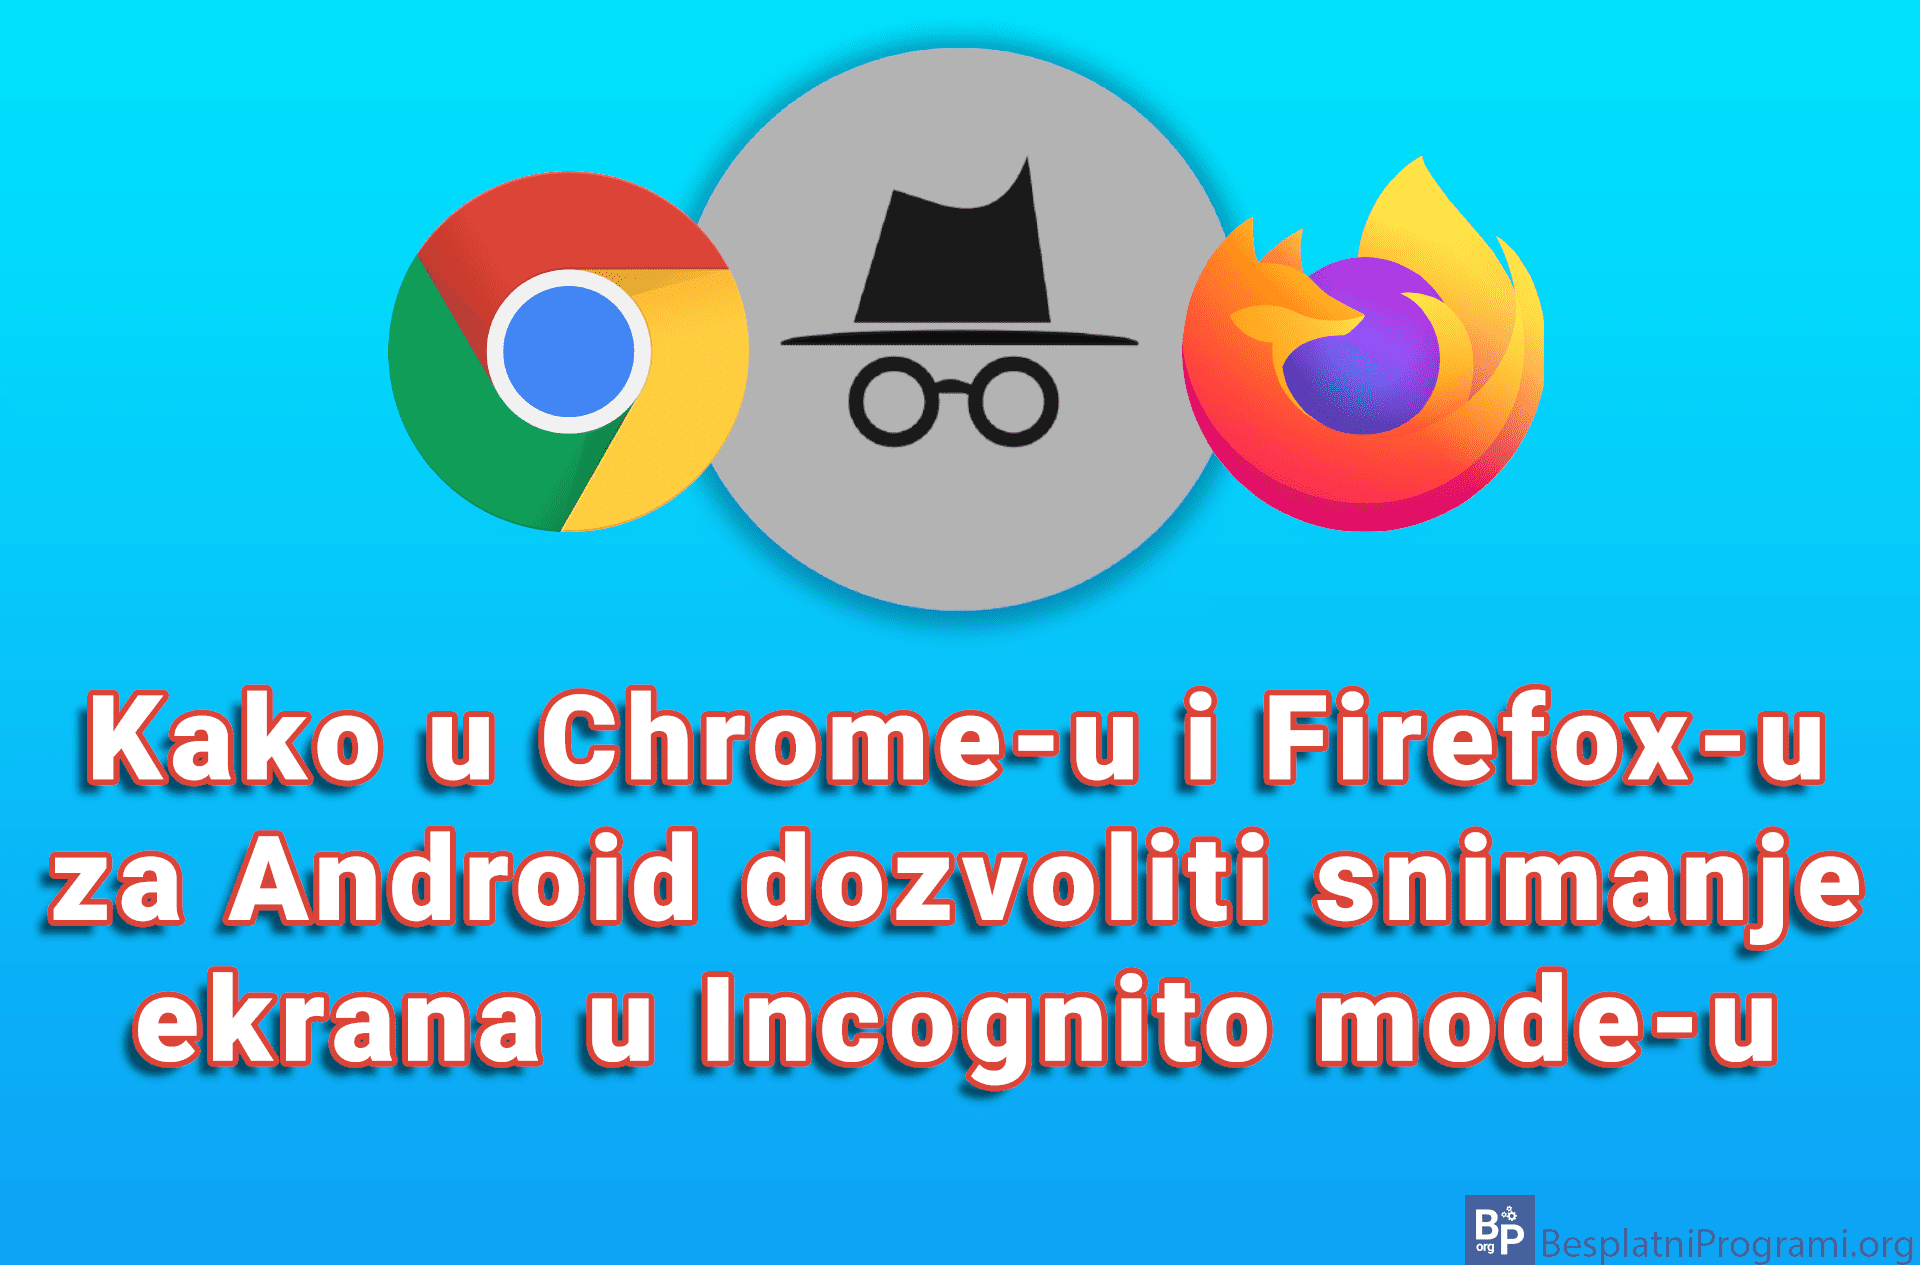 Kako u Chrome-u i Firefox-u za Android dozvoliti snimanje ekrana u Incognito mode-u